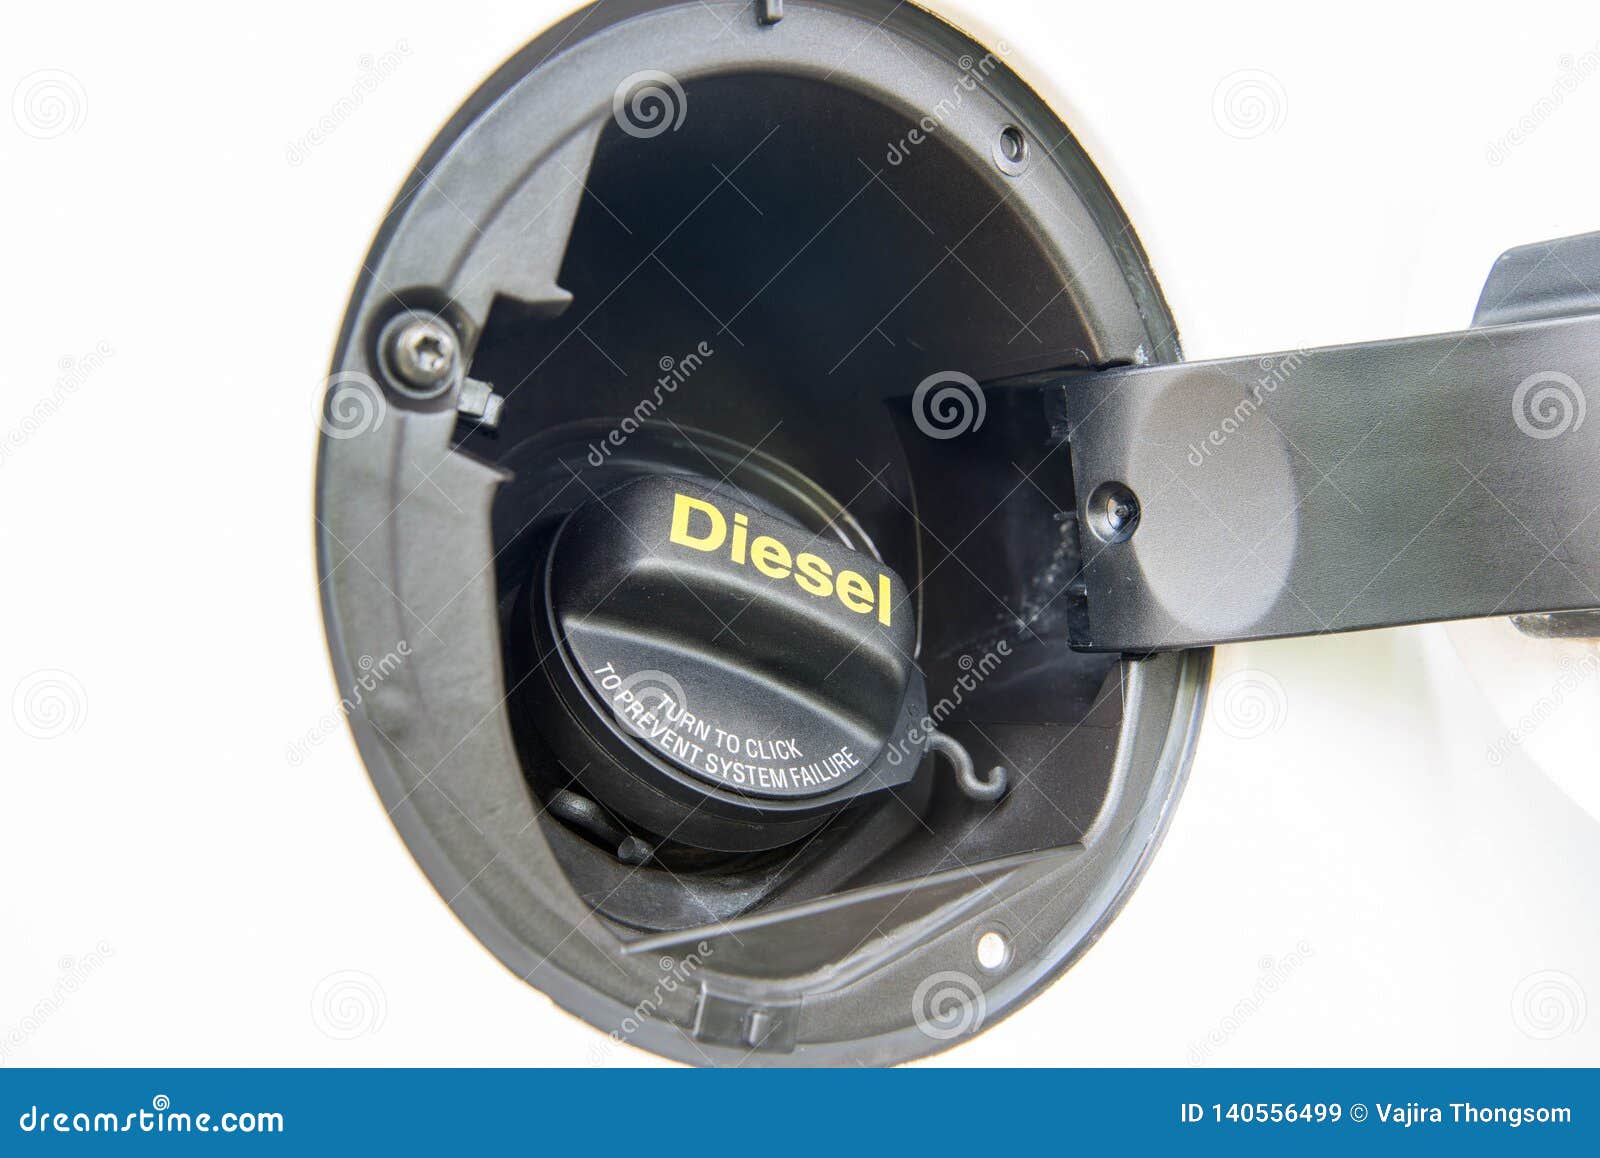 Diesel euro 5